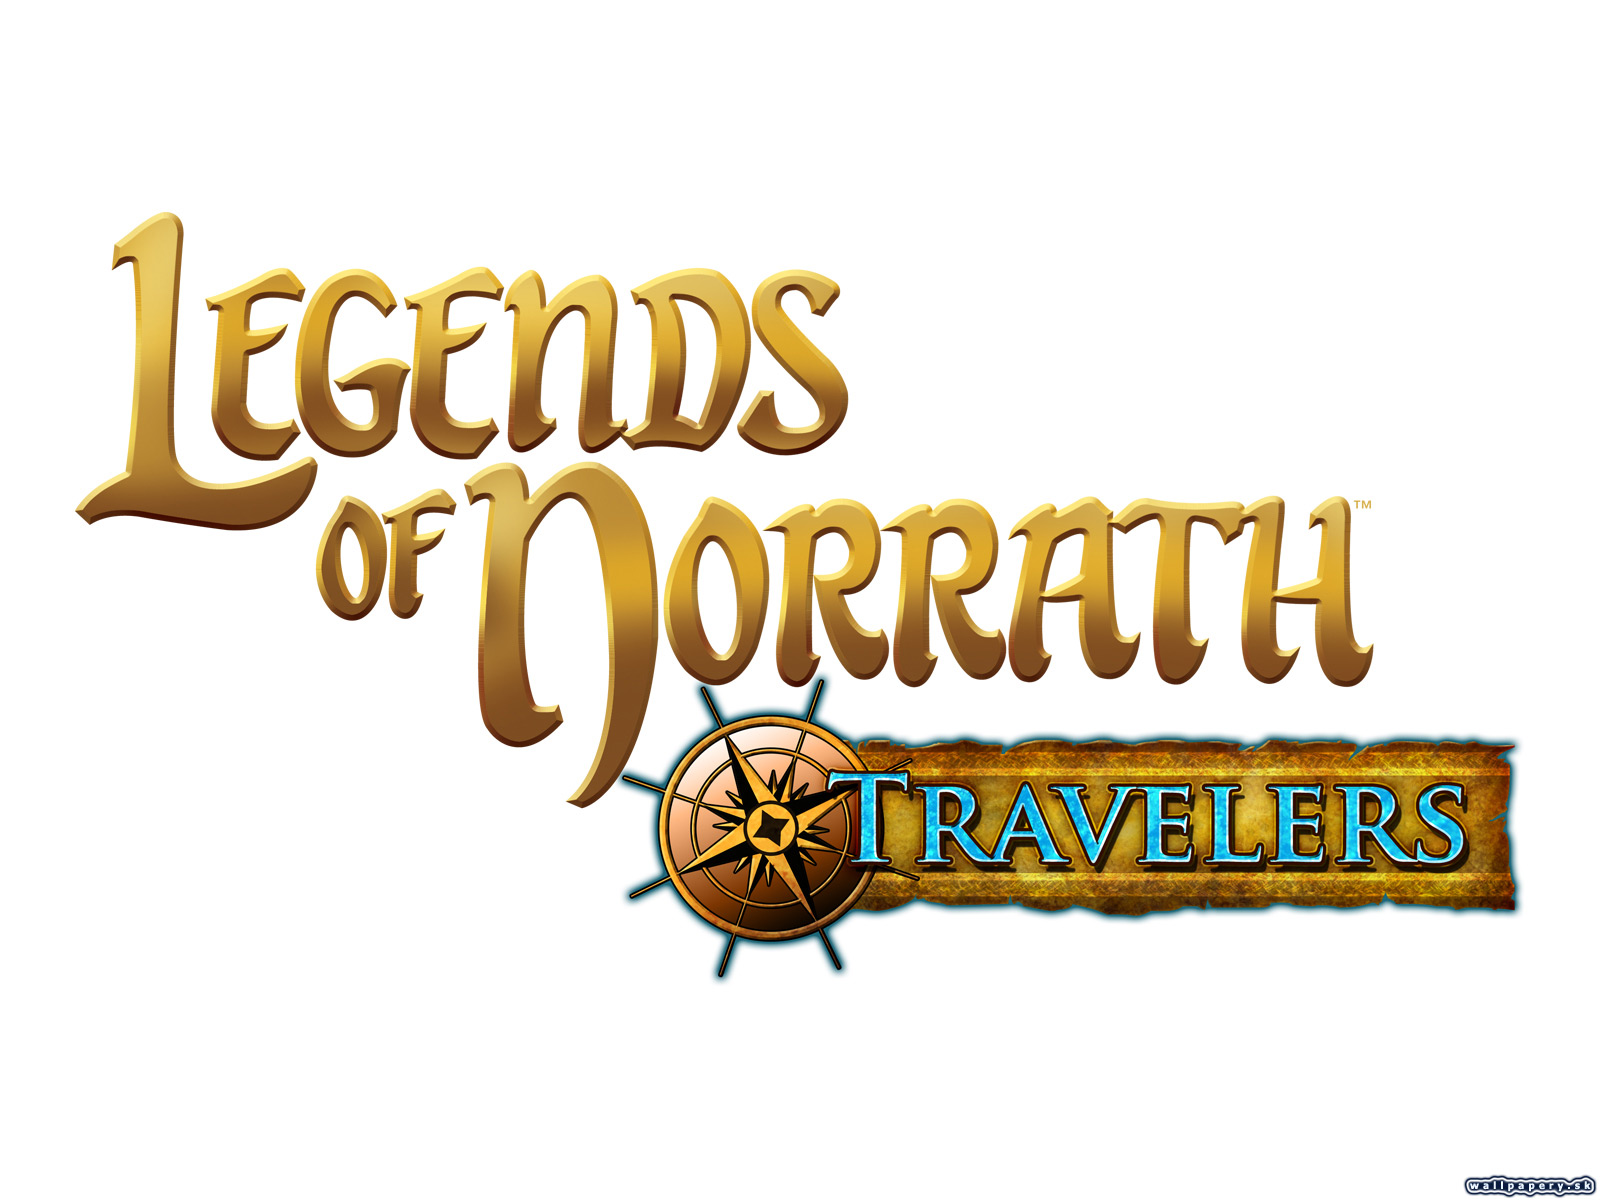 Legends of Norrath: Travelers - wallpaper 2